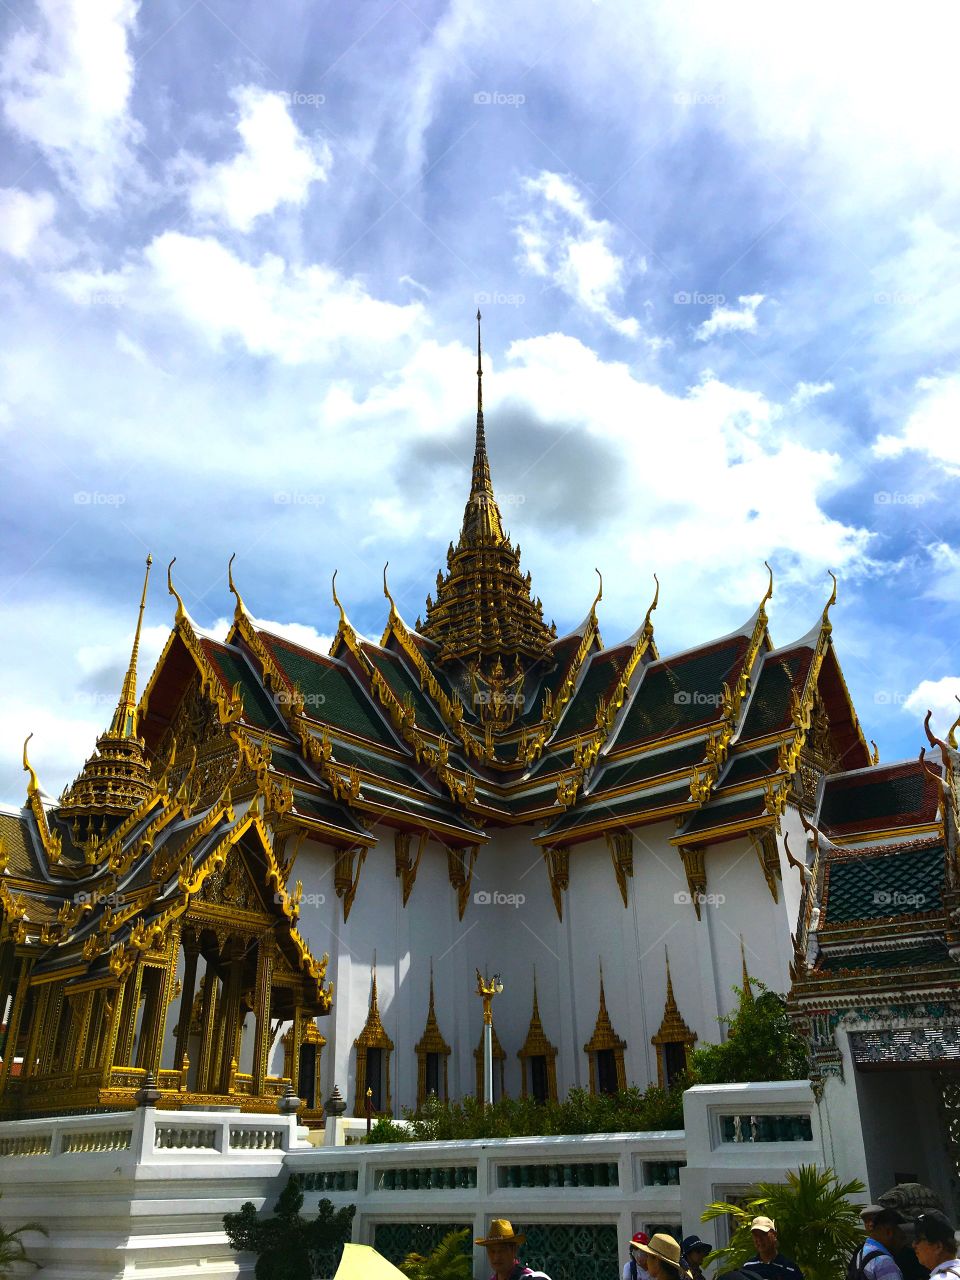 Grand Palace / Bangkok Thailand 76